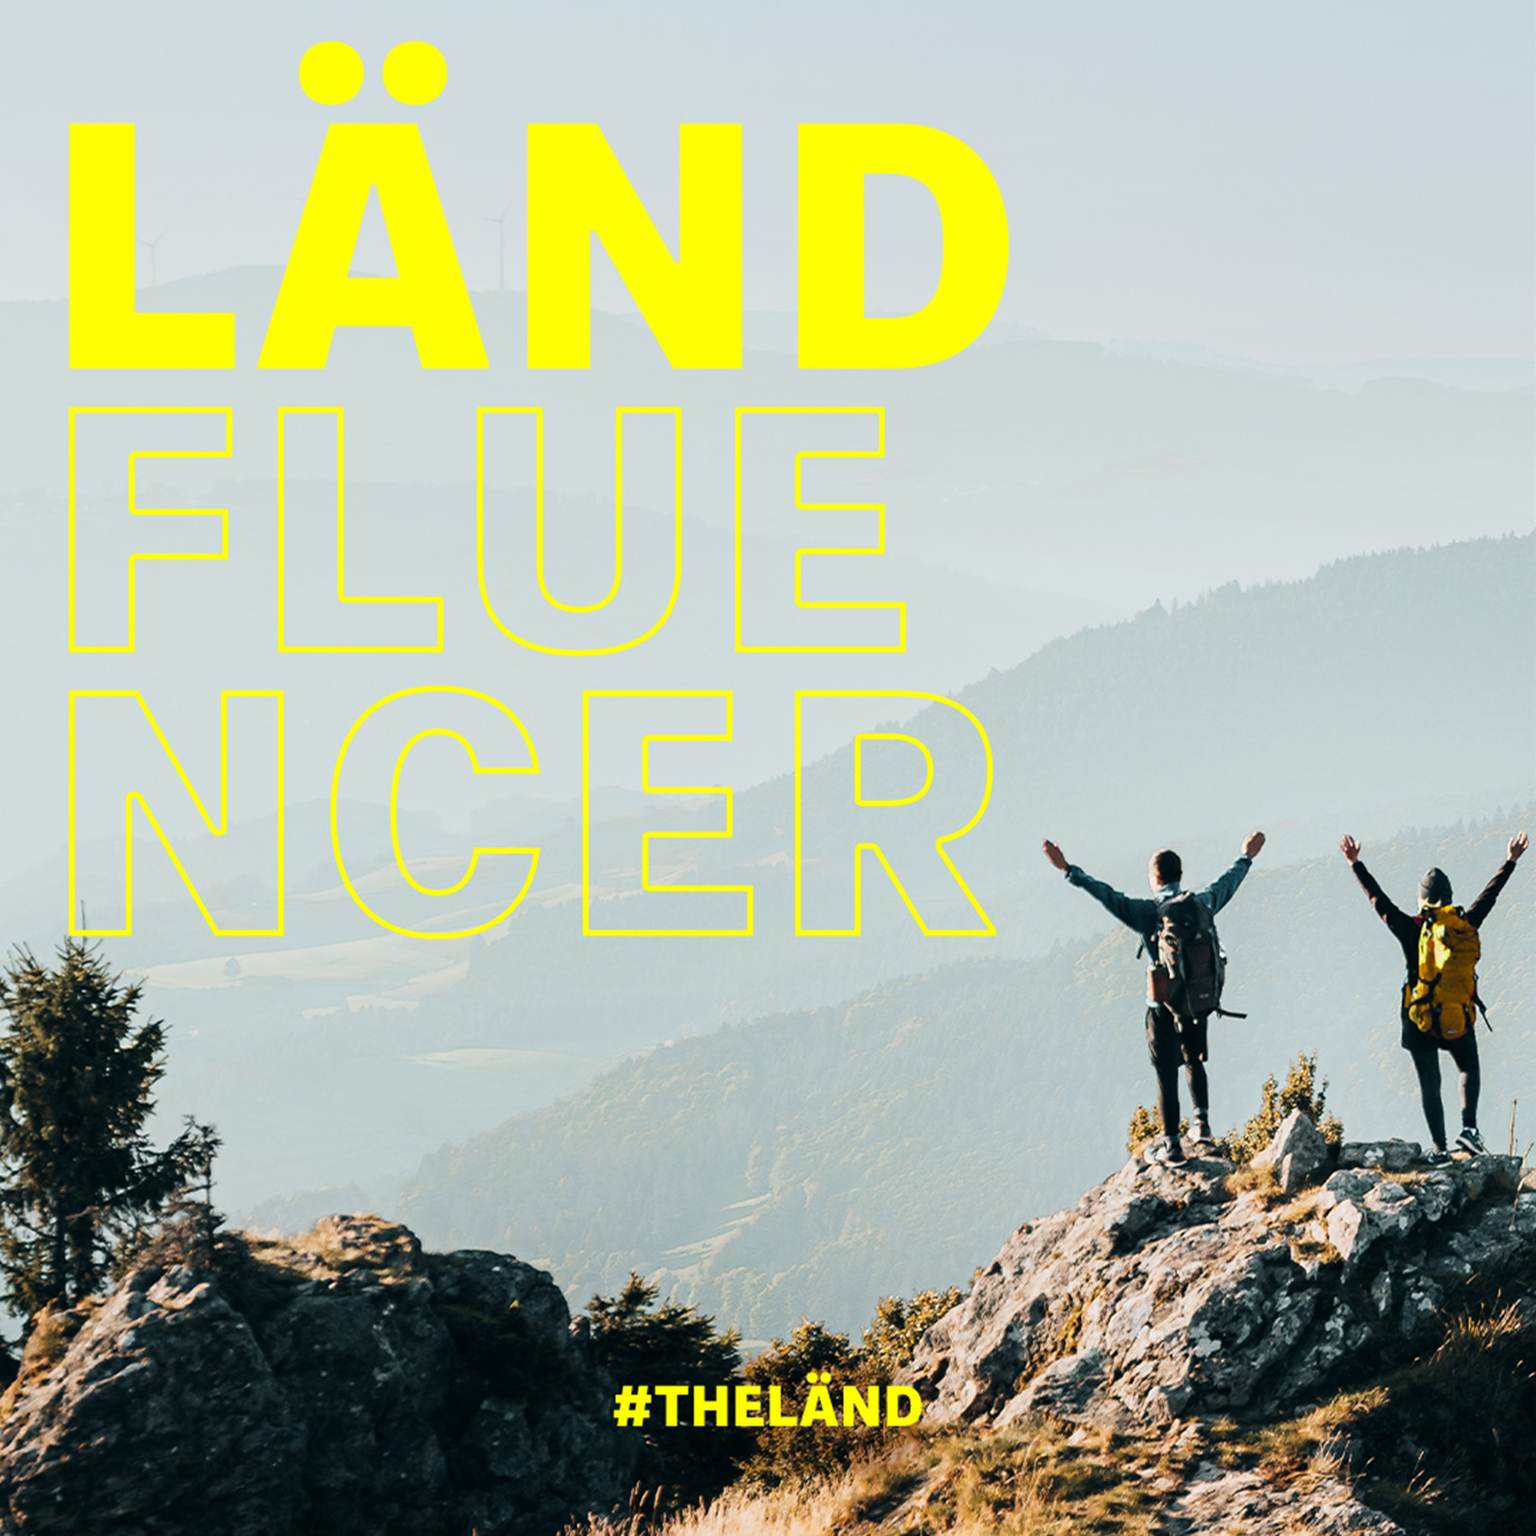 Zwei Menschen auf einem Berggipfel, im Vordergrund steht groß "LÄNDFLUENCER"